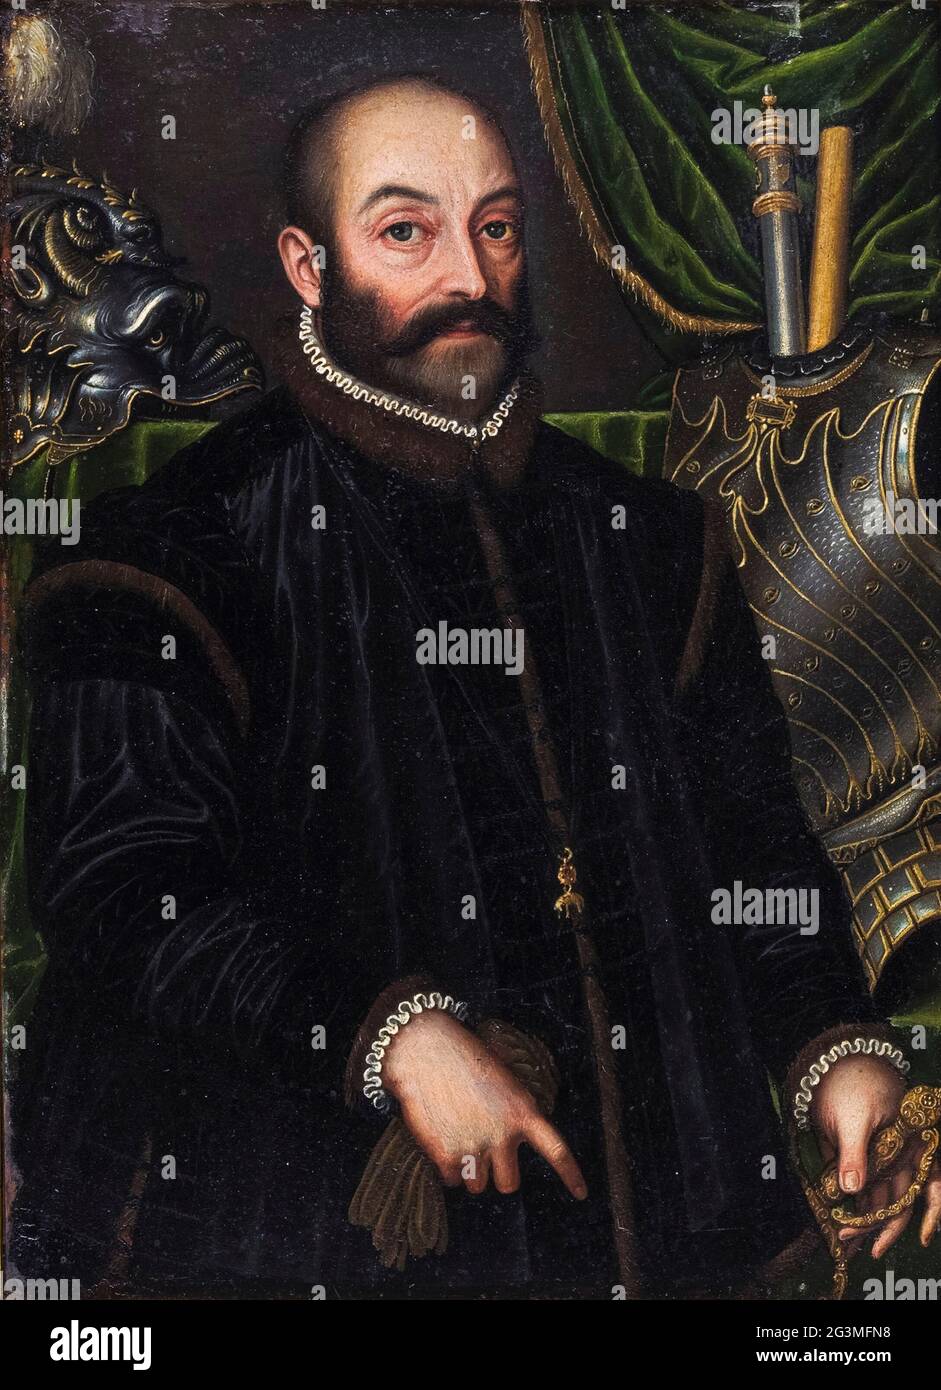 Guidobaldo II della Rovere (1514-1574), Herzog von Urbino, mit seiner Rüstung, Porträtmalerei von Filippo Negroli, 1580-1585 Stockfoto